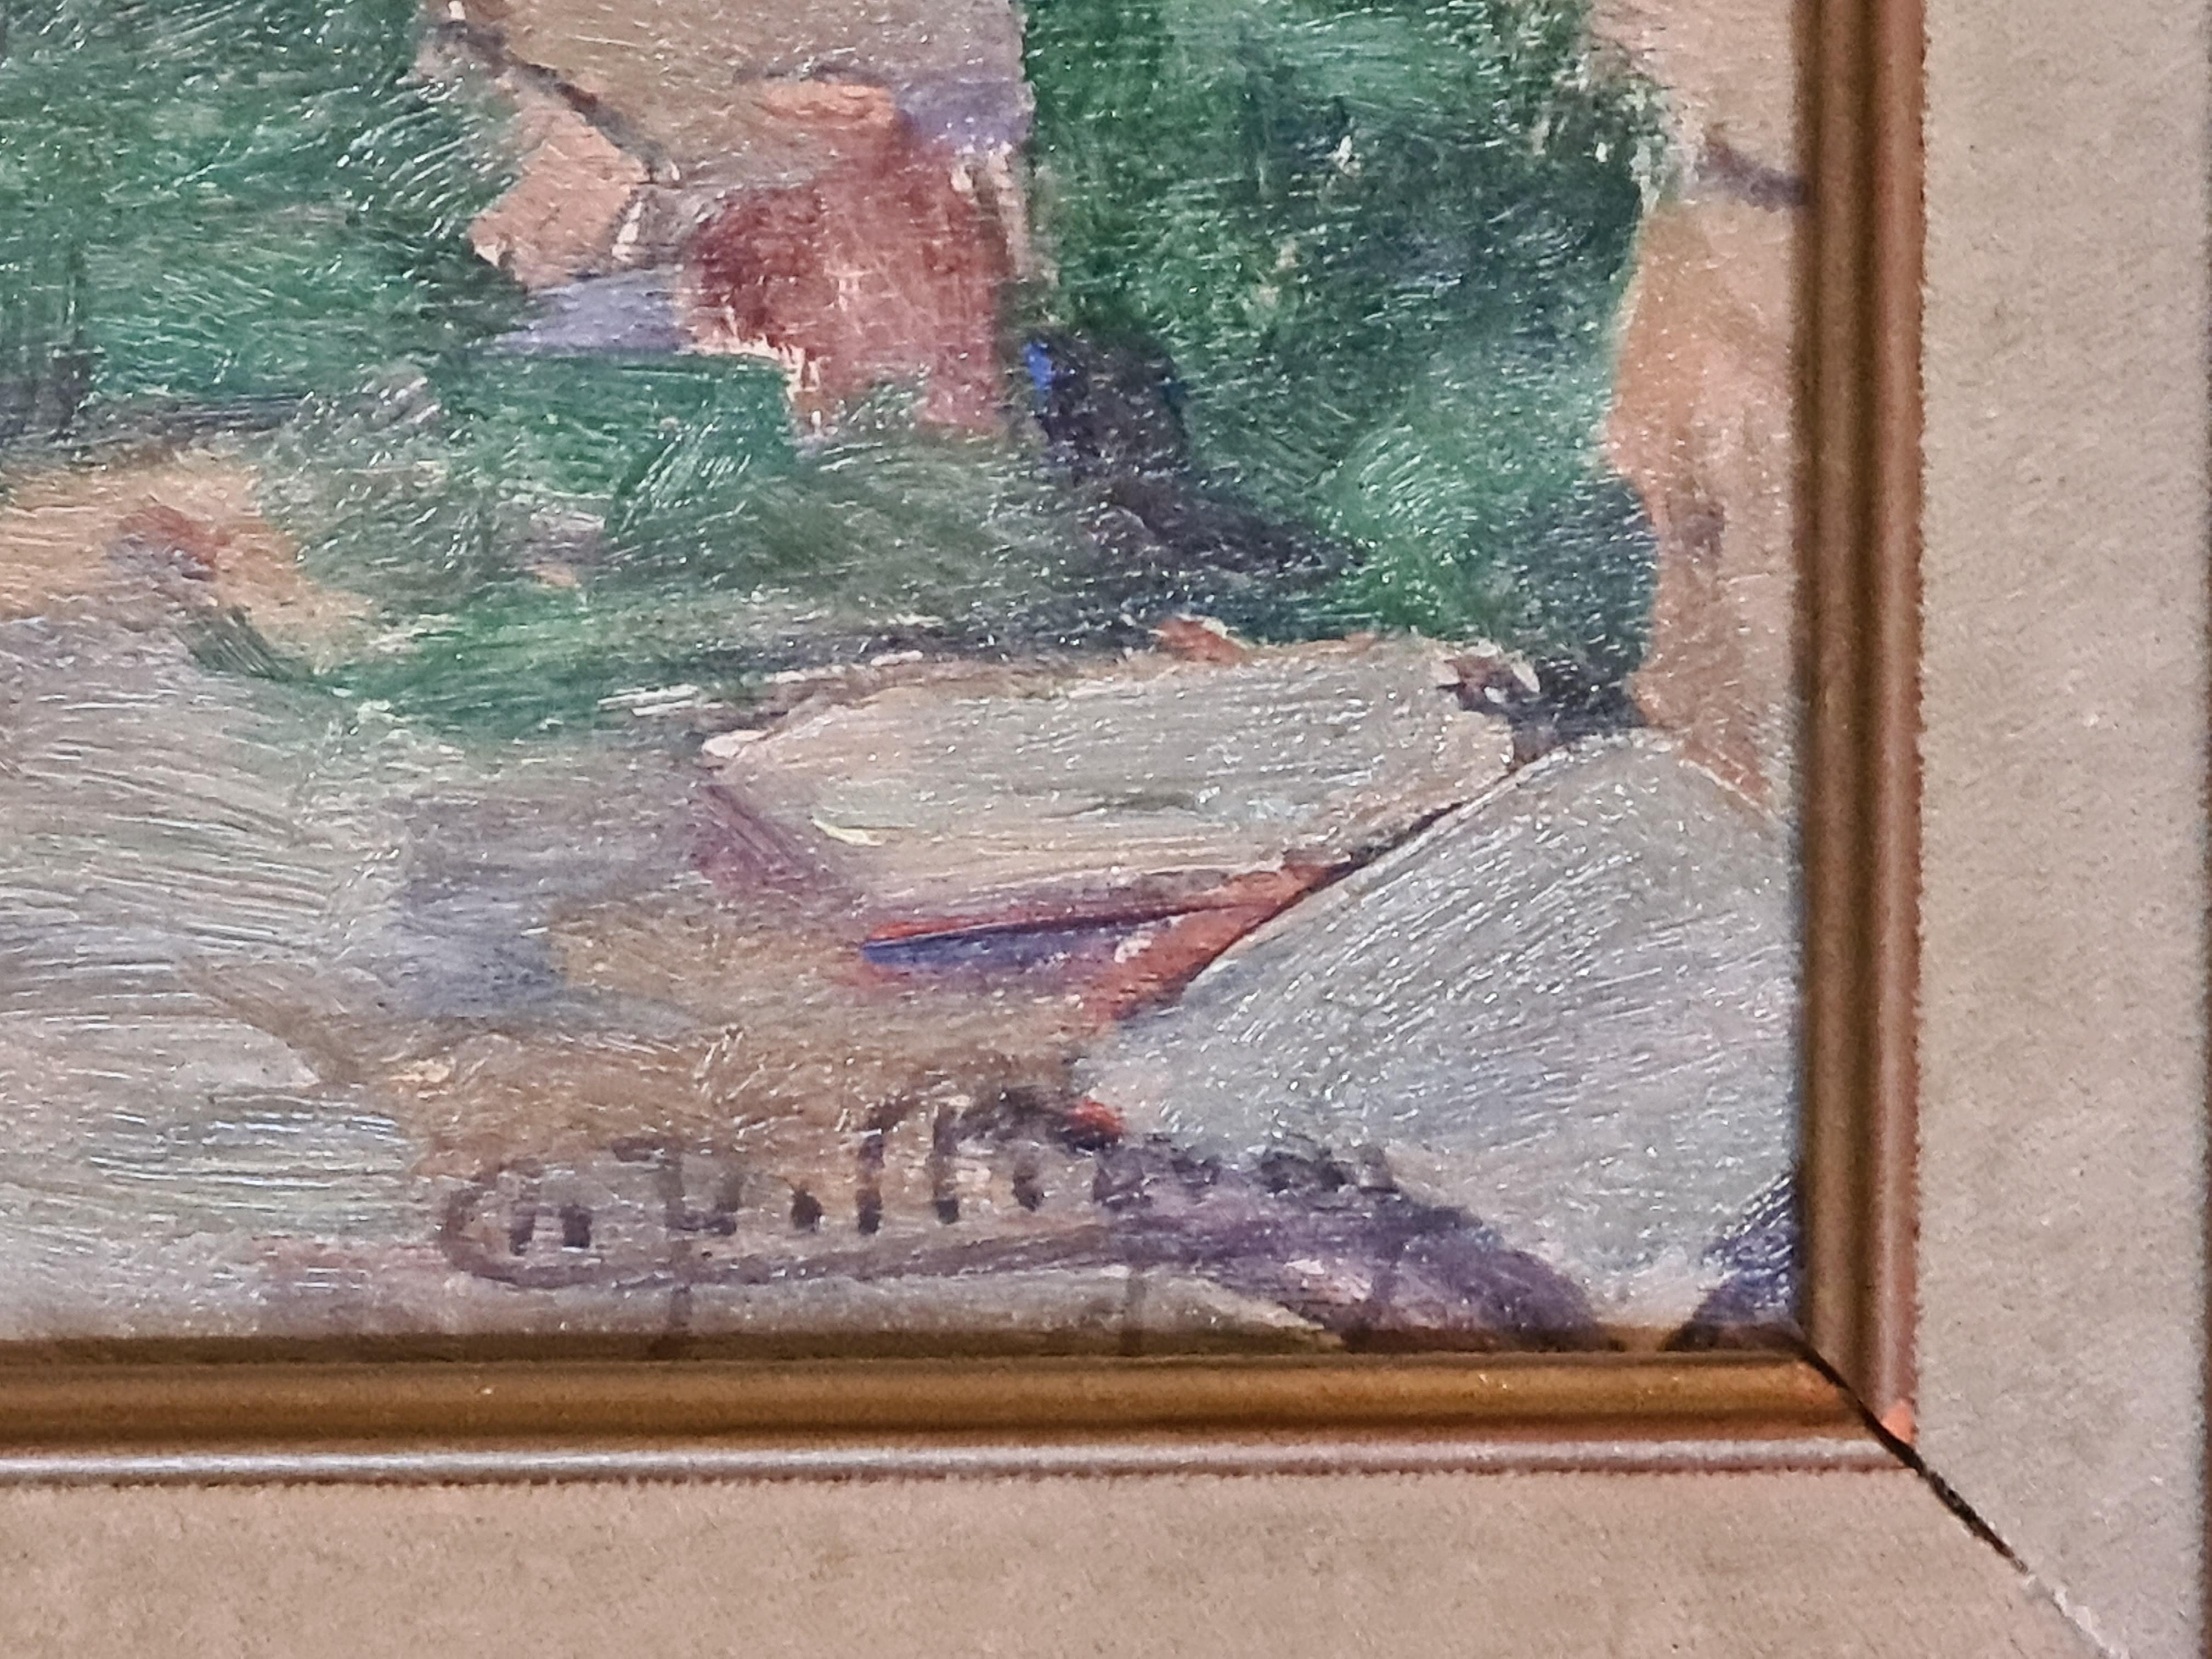 Französisches impressionistisches Ölgemälde auf Karton, 'Villecelle Pres de Lamalou' Südfrankreich. (Impressionismus), Painting, von Charles Pellegrin